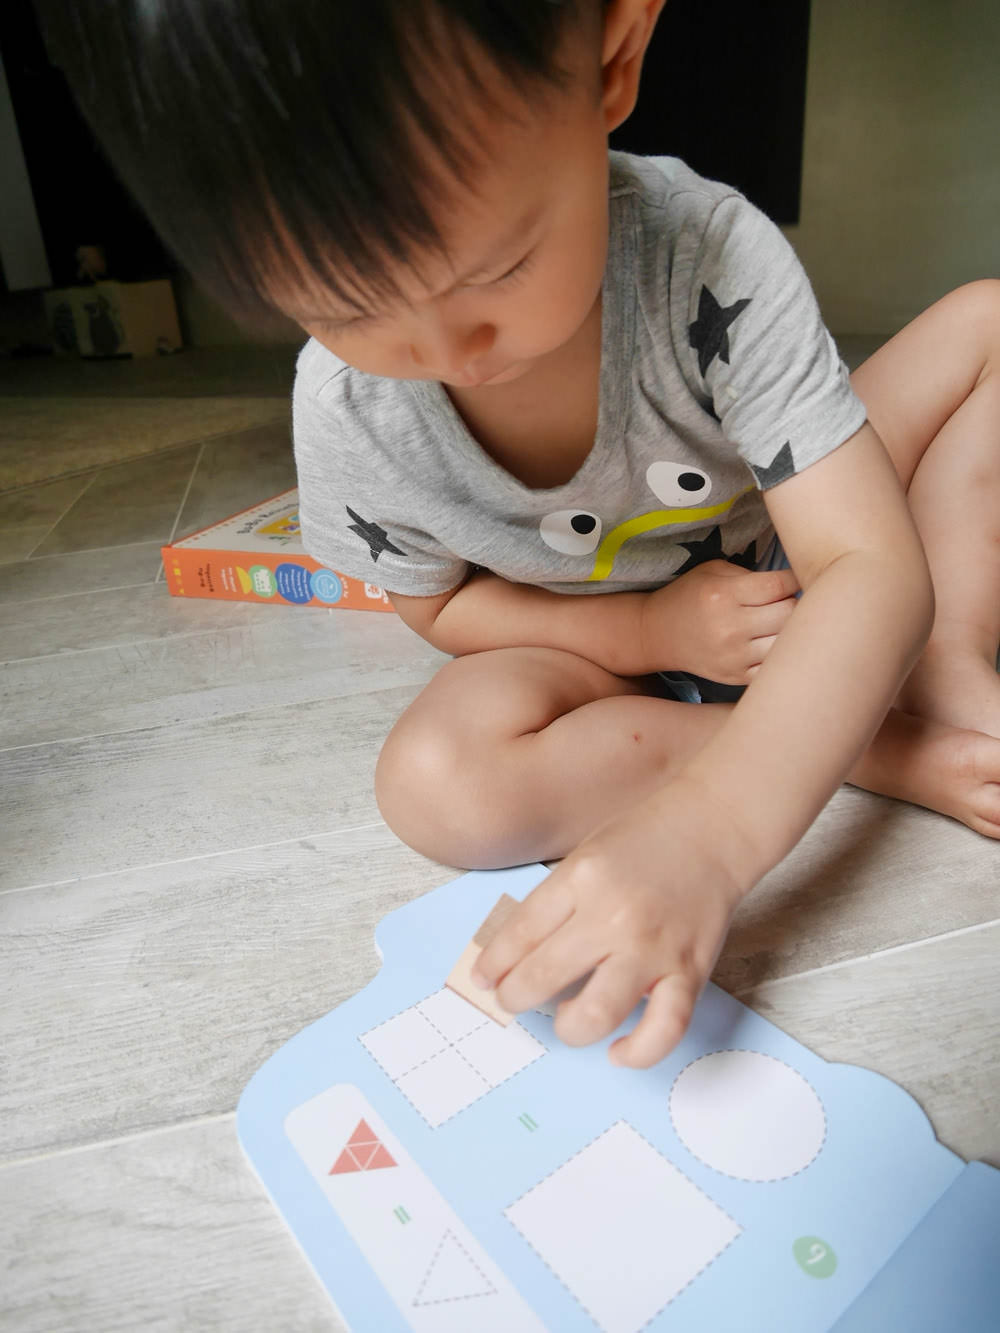 [啾團] 讓潛能在遊戲中得到啟發,讓小朋友玩出興趣的益智玩具/木木的第一本英文點讀筆-學齡國際iQ House(市面上最低價!)